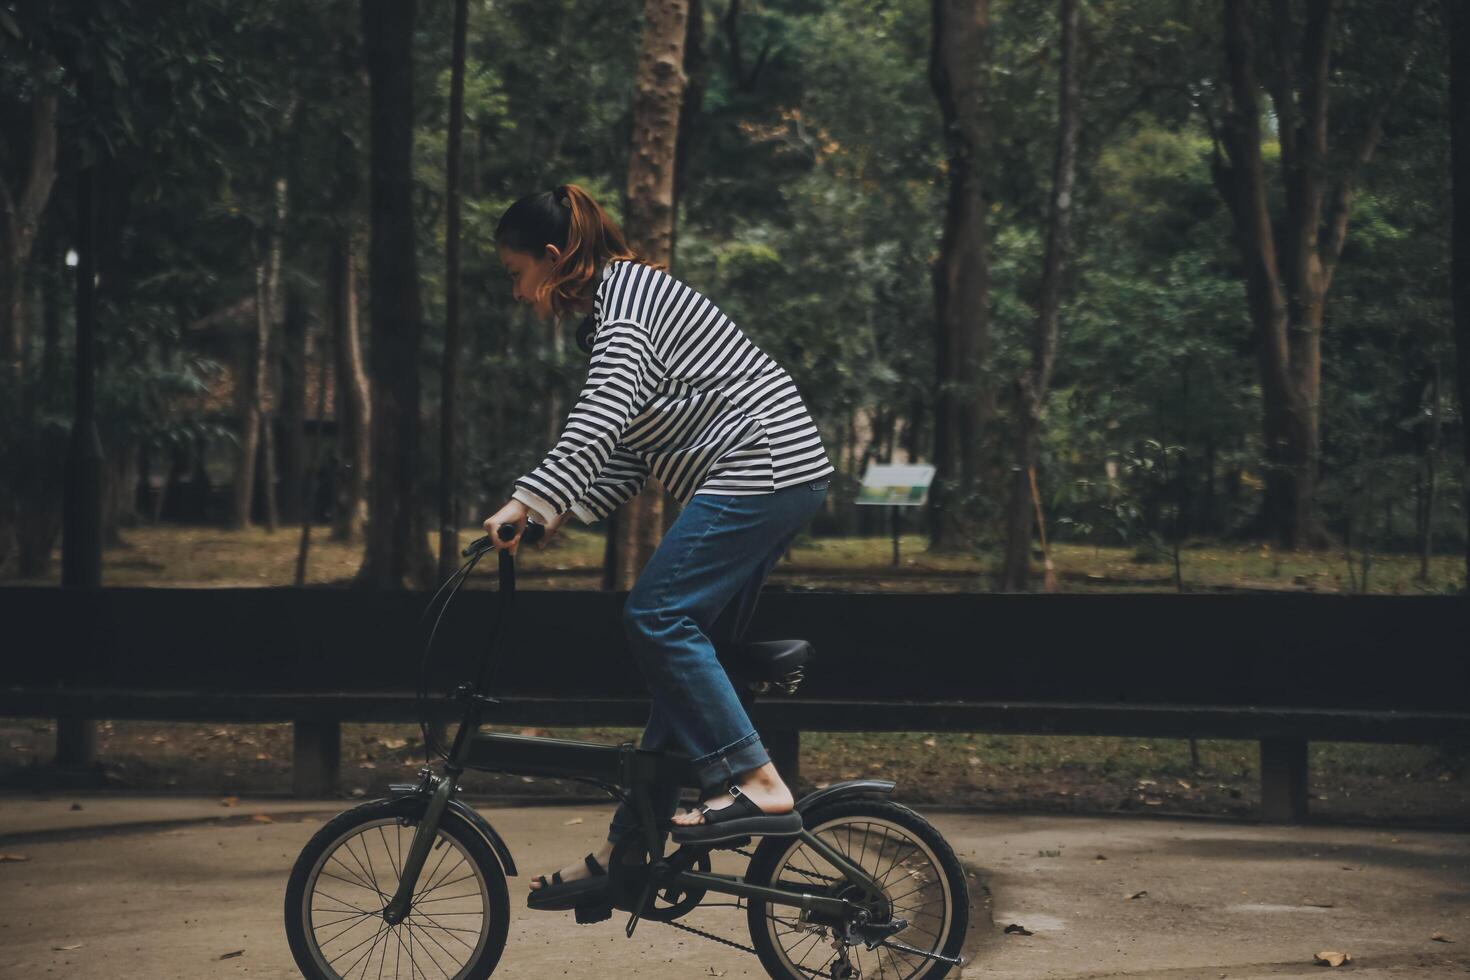 Lycklig asiatisk ung kvinna promenad och rida cykel i parkera, gata stad henne leende använder sig av cykel av transport, eco vänlig, människor livsstil begrepp. foto